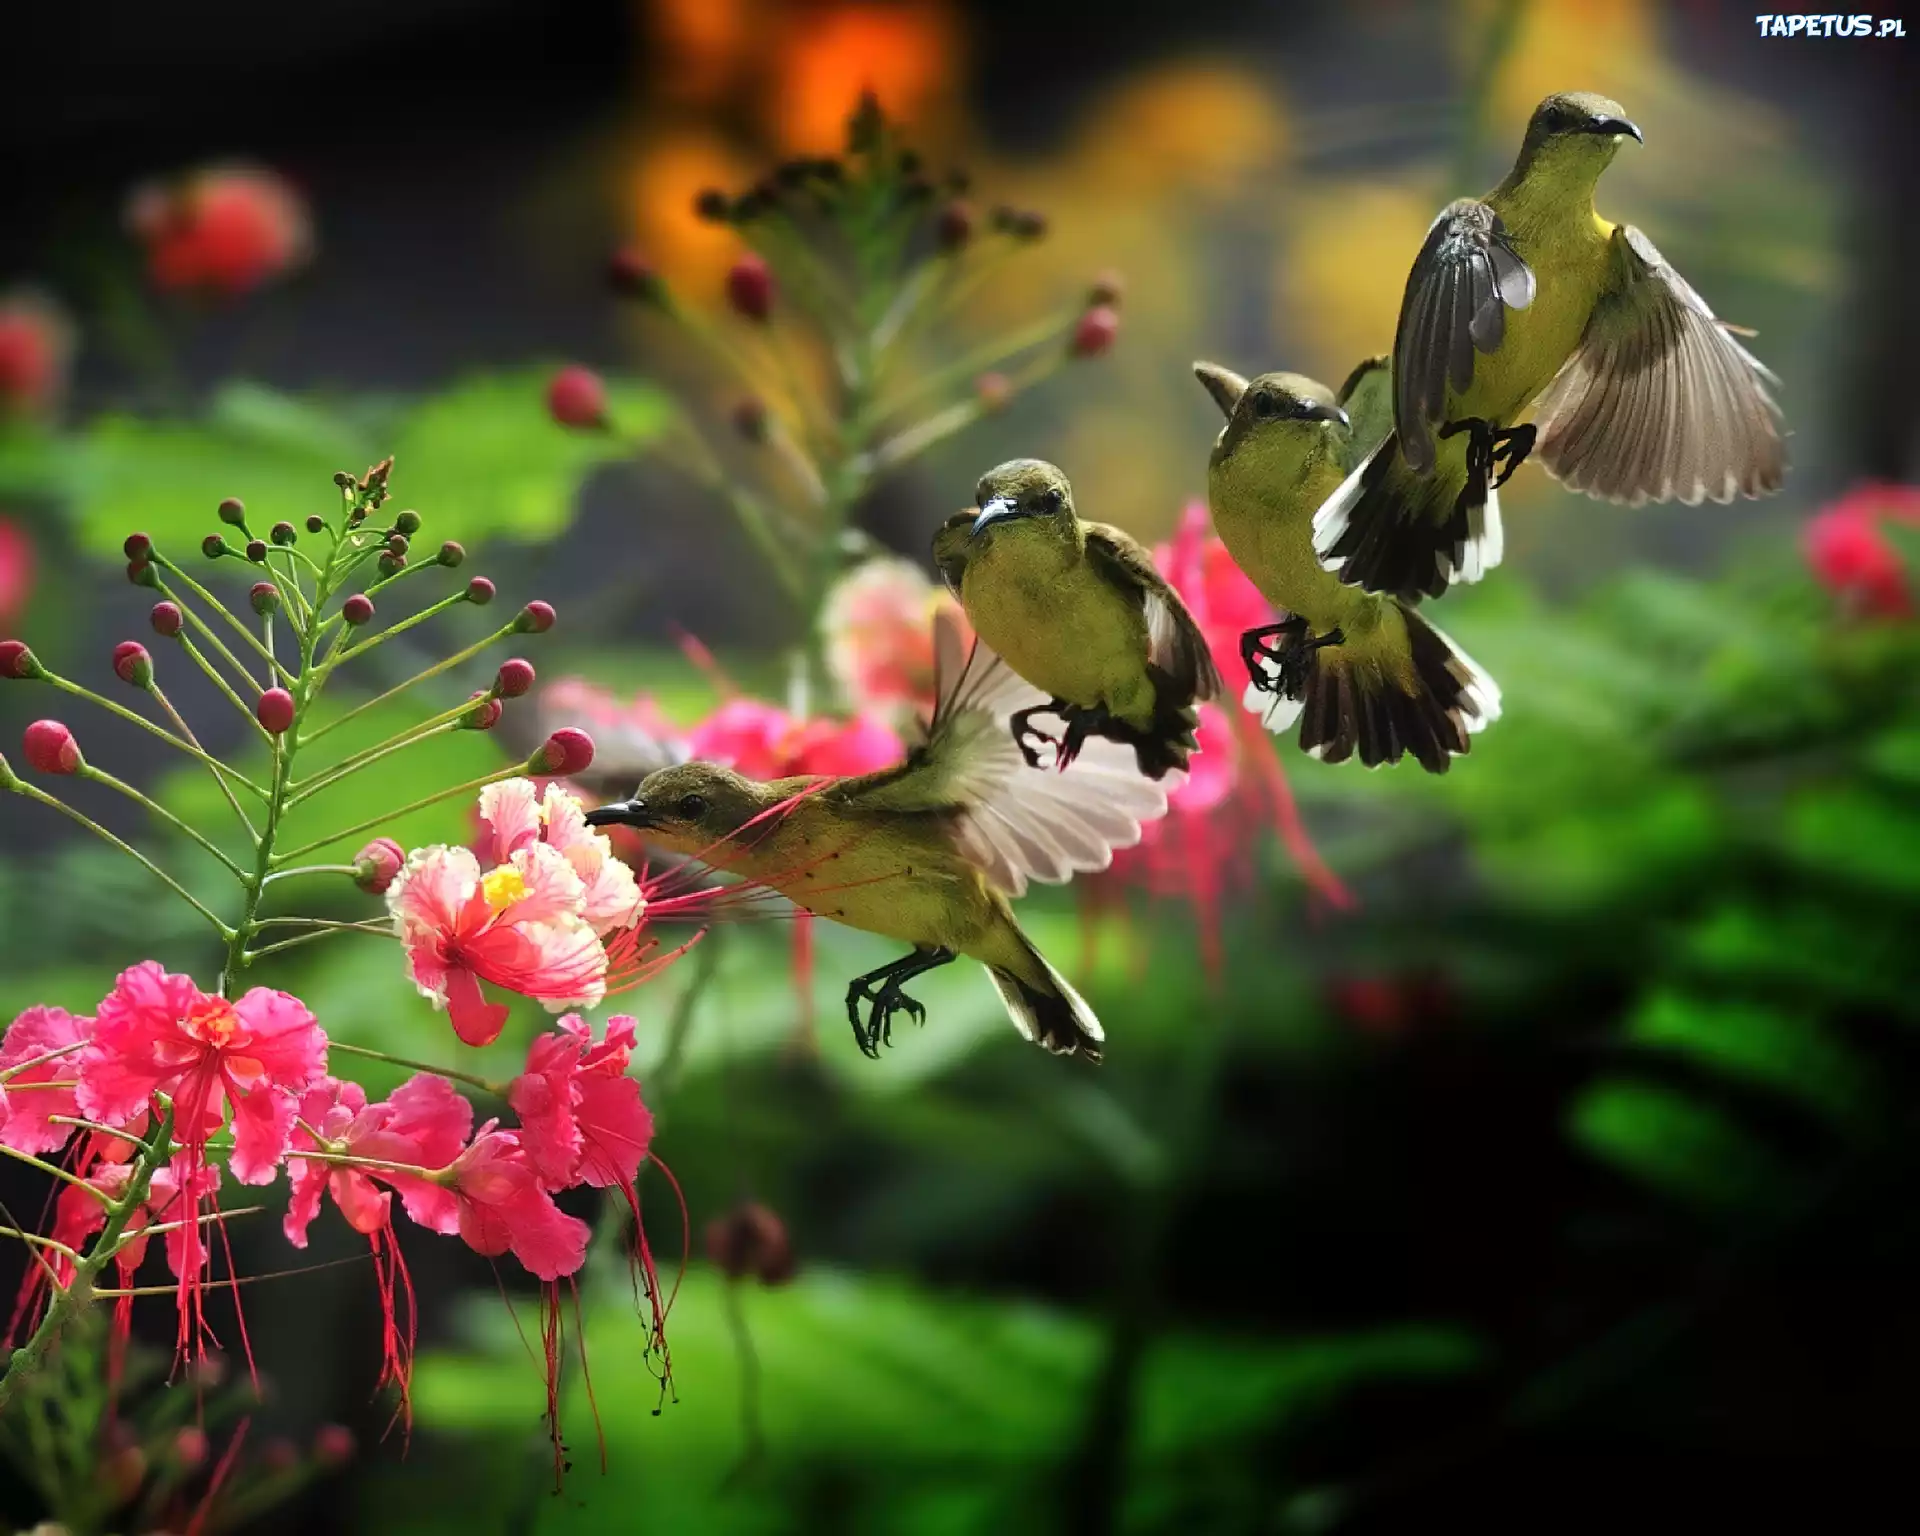 Вы слышали как пели птицы. Райские птицы. Красивые птицы. Красивые цветы и птицы. Красивая природа с птичками.